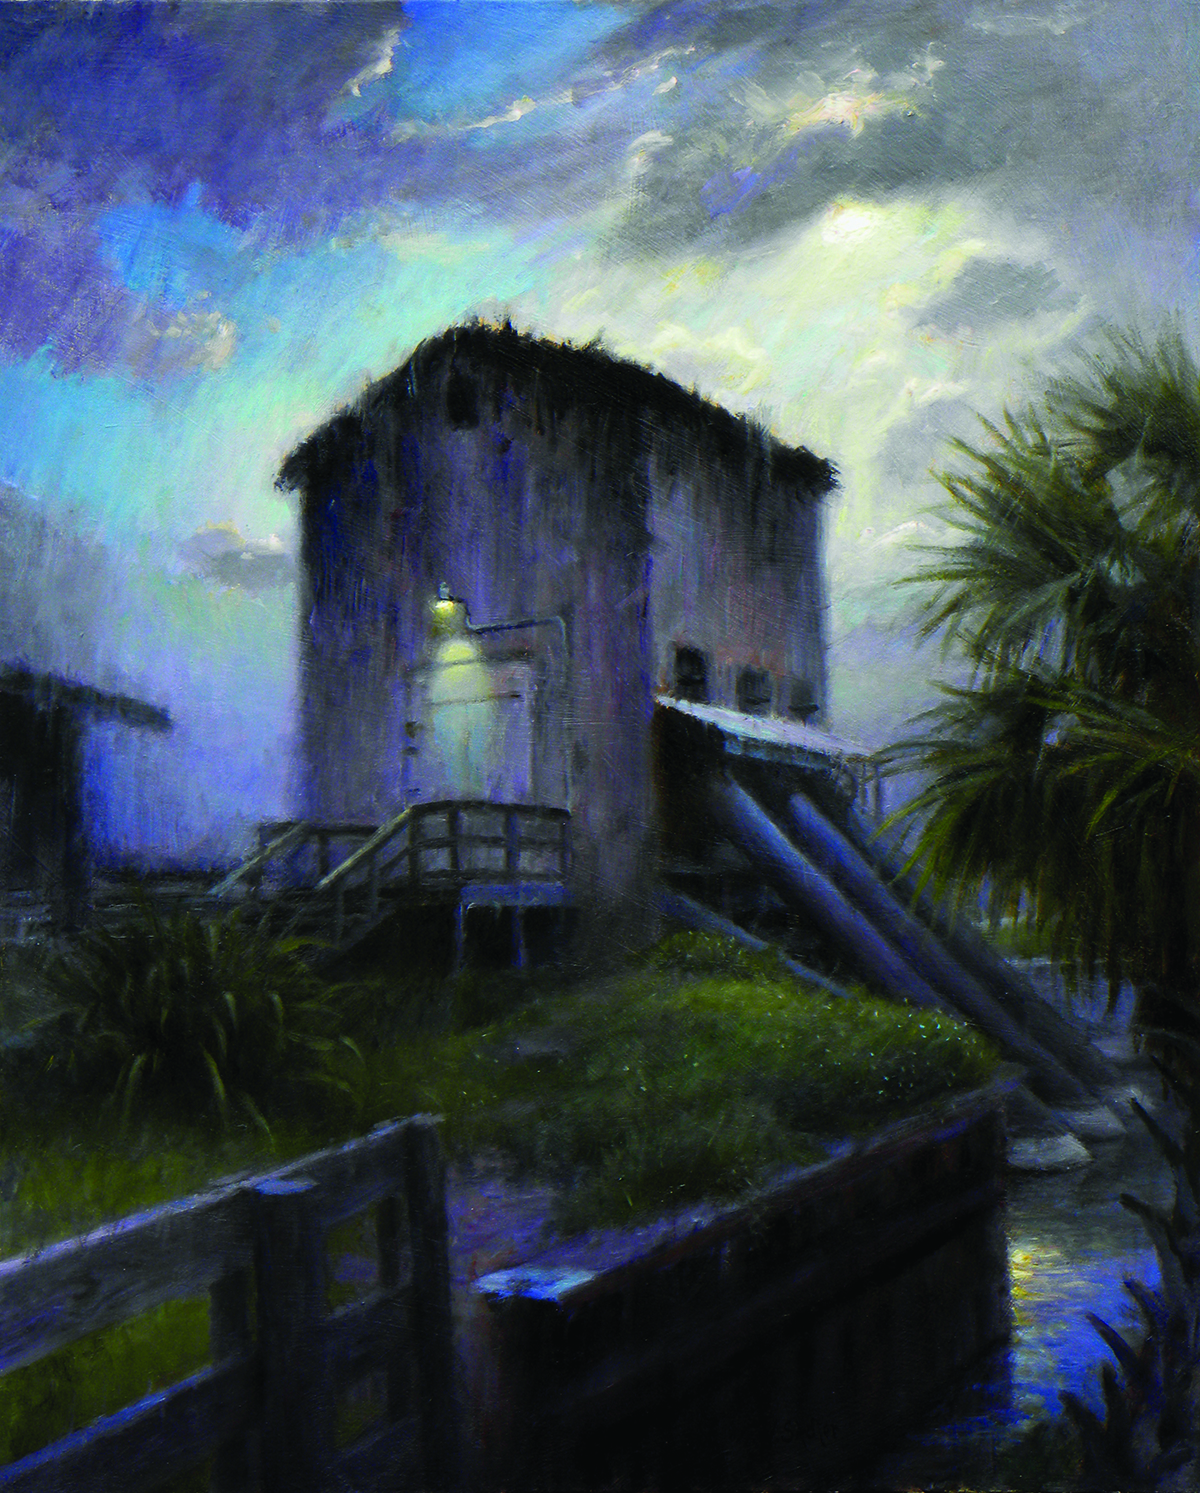 Pump House Nocturne, by Tom Sadler.